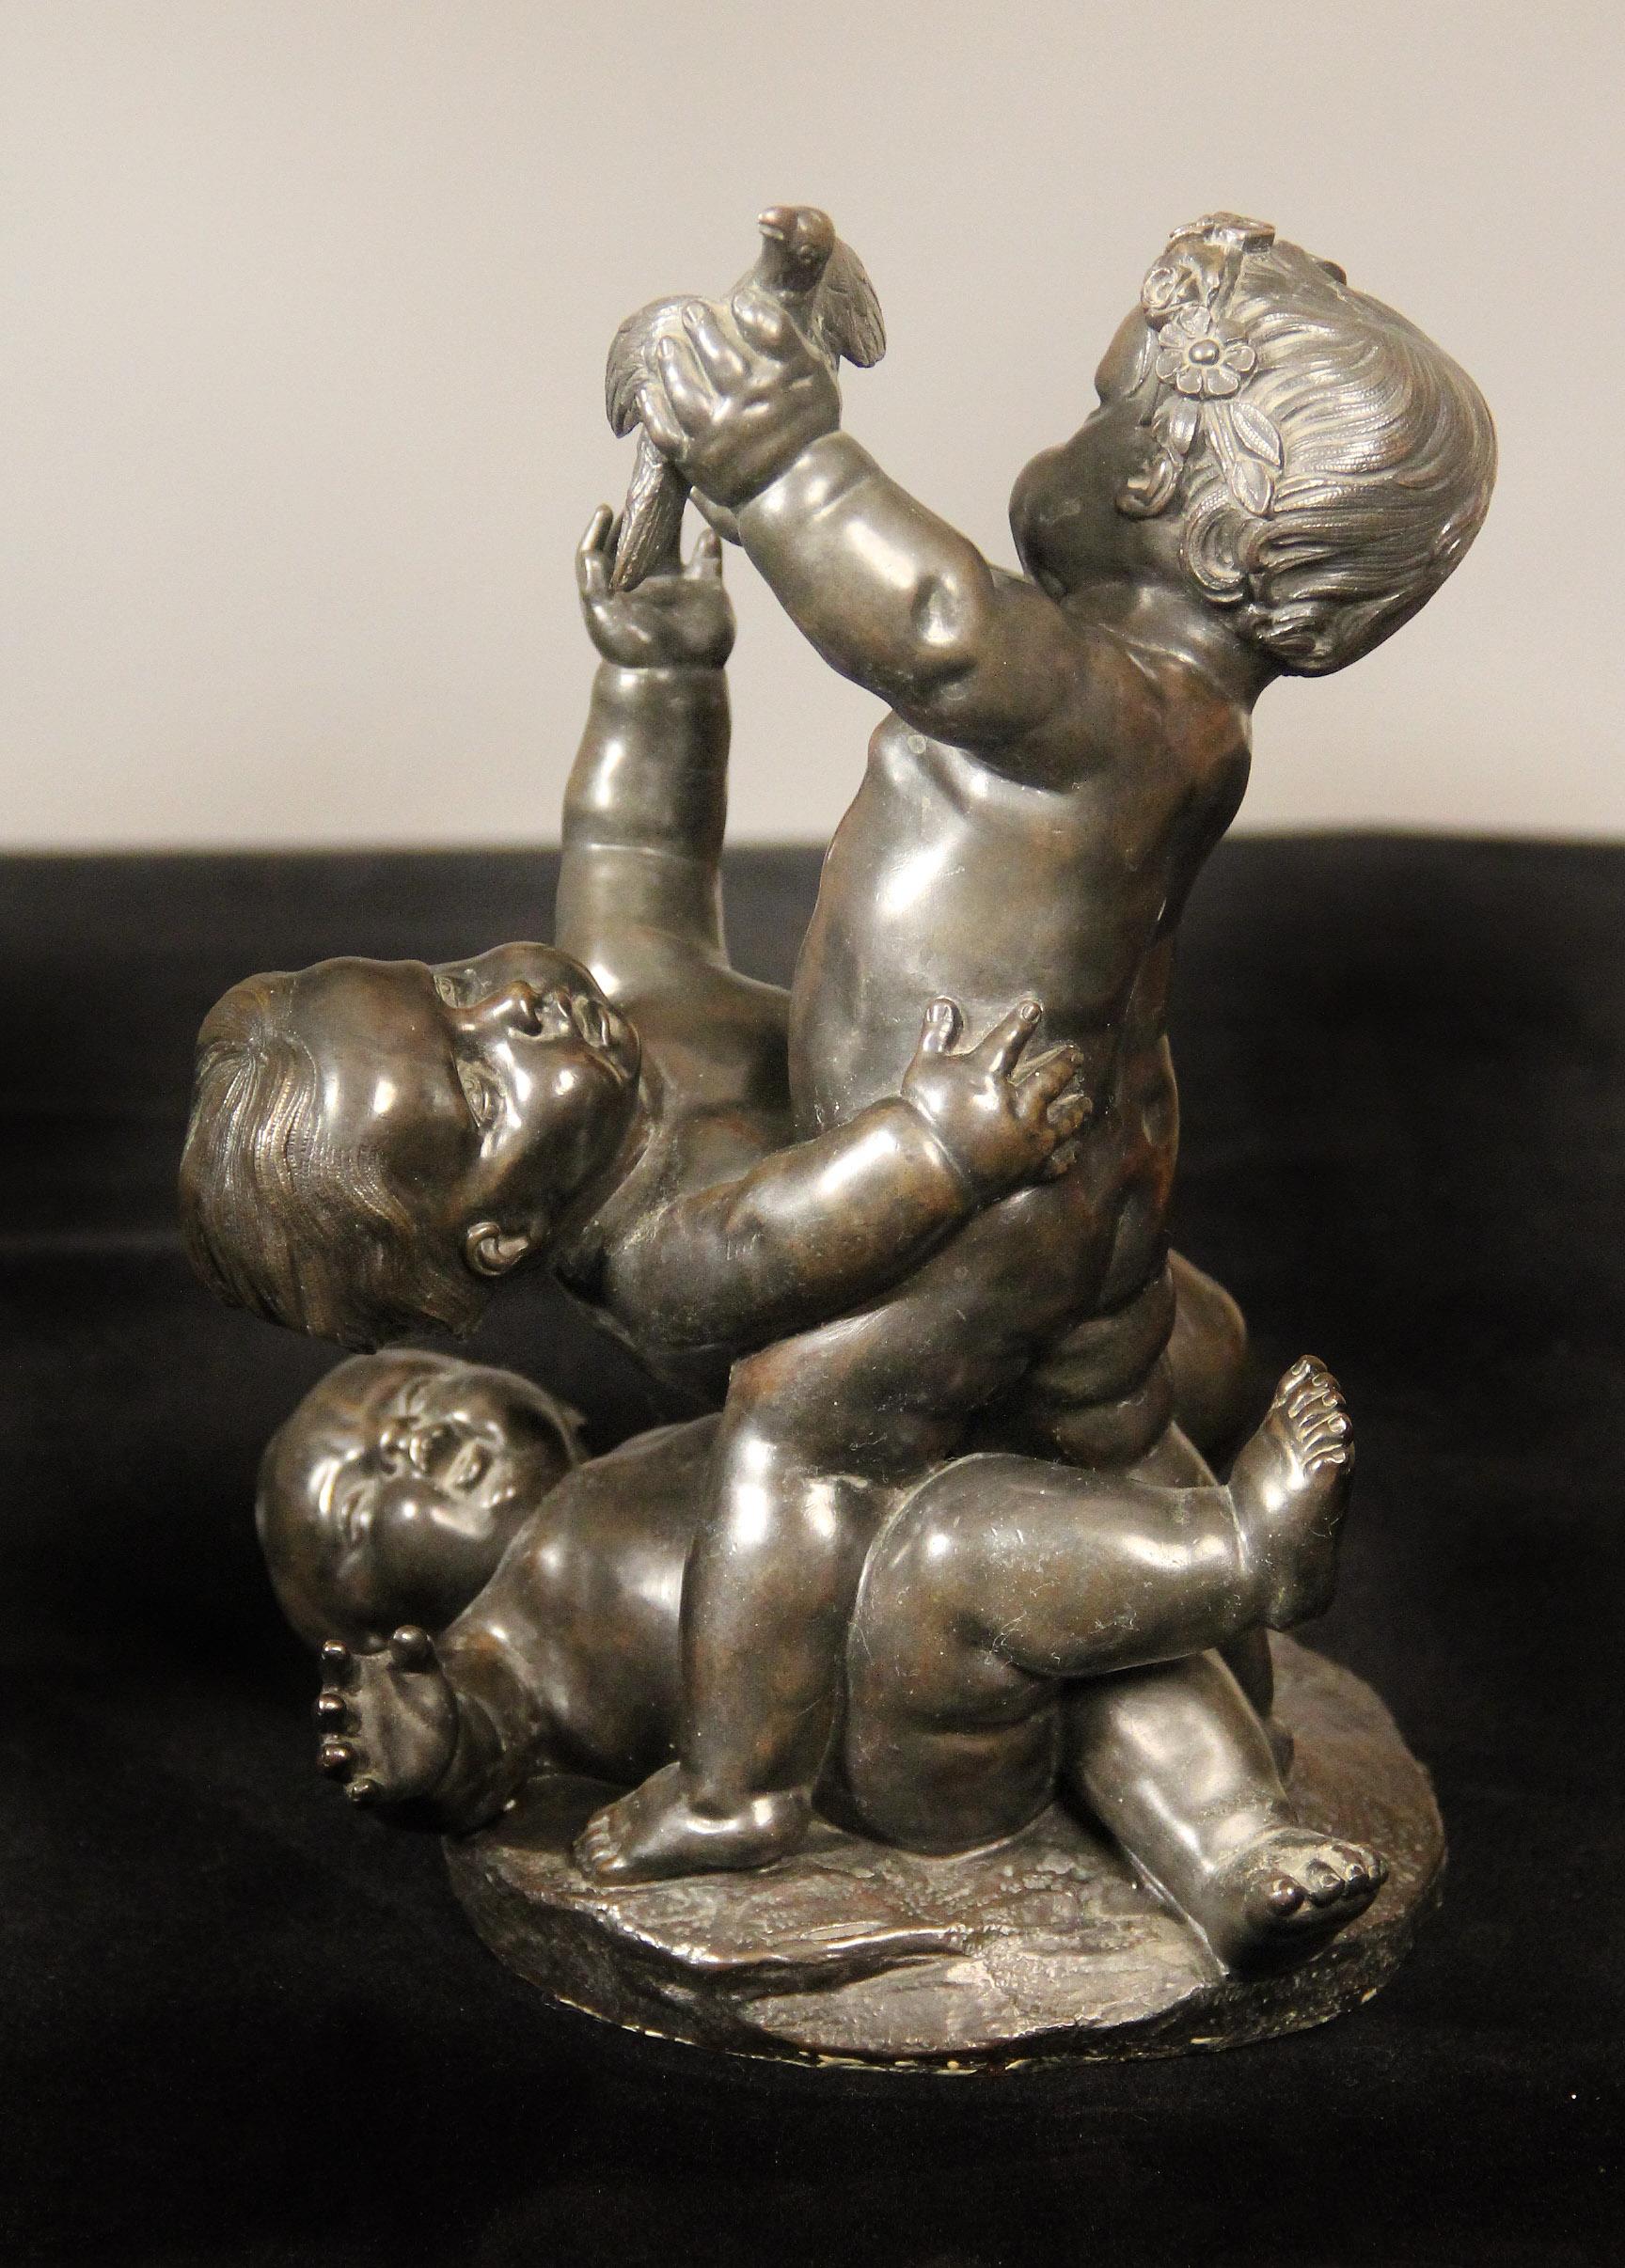 Ein schönes Paar Bronzen aus dem späten 19. Jahrhundert mit Putten beim Spiel

Jede Bronze stellt drei Putten dar, die miteinander ringen, eine mit einem Vogel, die andere mit einer Muschel.